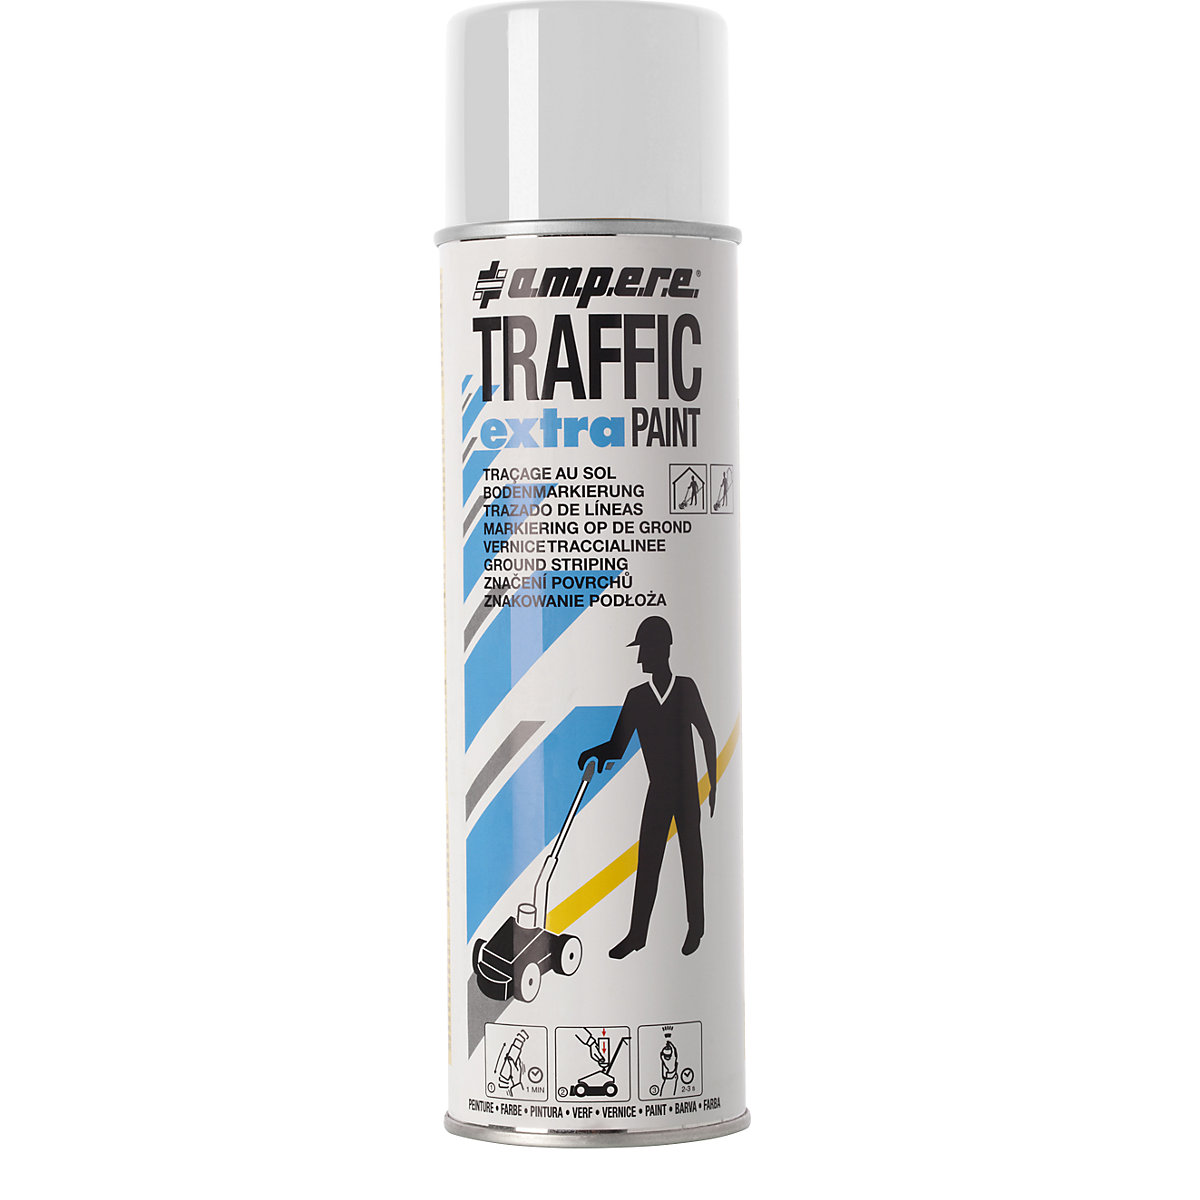 Boja za označavanje Traffic extra Paint&reg; za velika opterećenja - Ampere